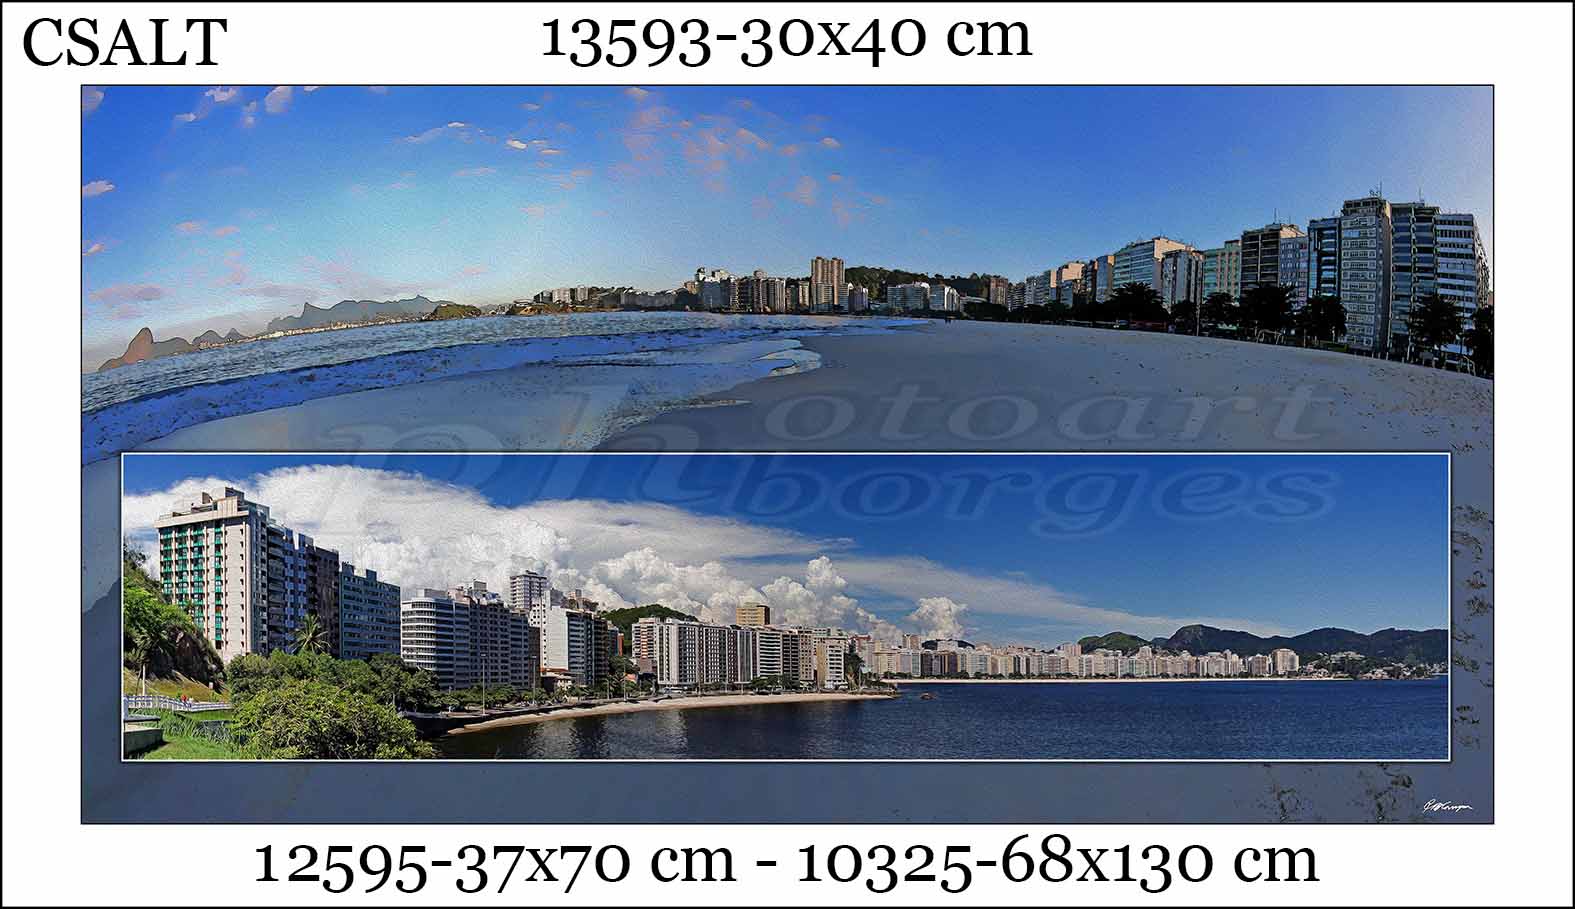 Fotos do Rio e Niterói  - Para adquirir entre em contato (21)99782-8065 (Paulo Henrique)<br>
      Imagens código com início 13 (pequenas) - R$100,00<br>
      Código 12 (médias) R$ 200,00<br>
      Código 10 (grandes) R$ 450,00<br>
      Para outros tamanhos entre em contato